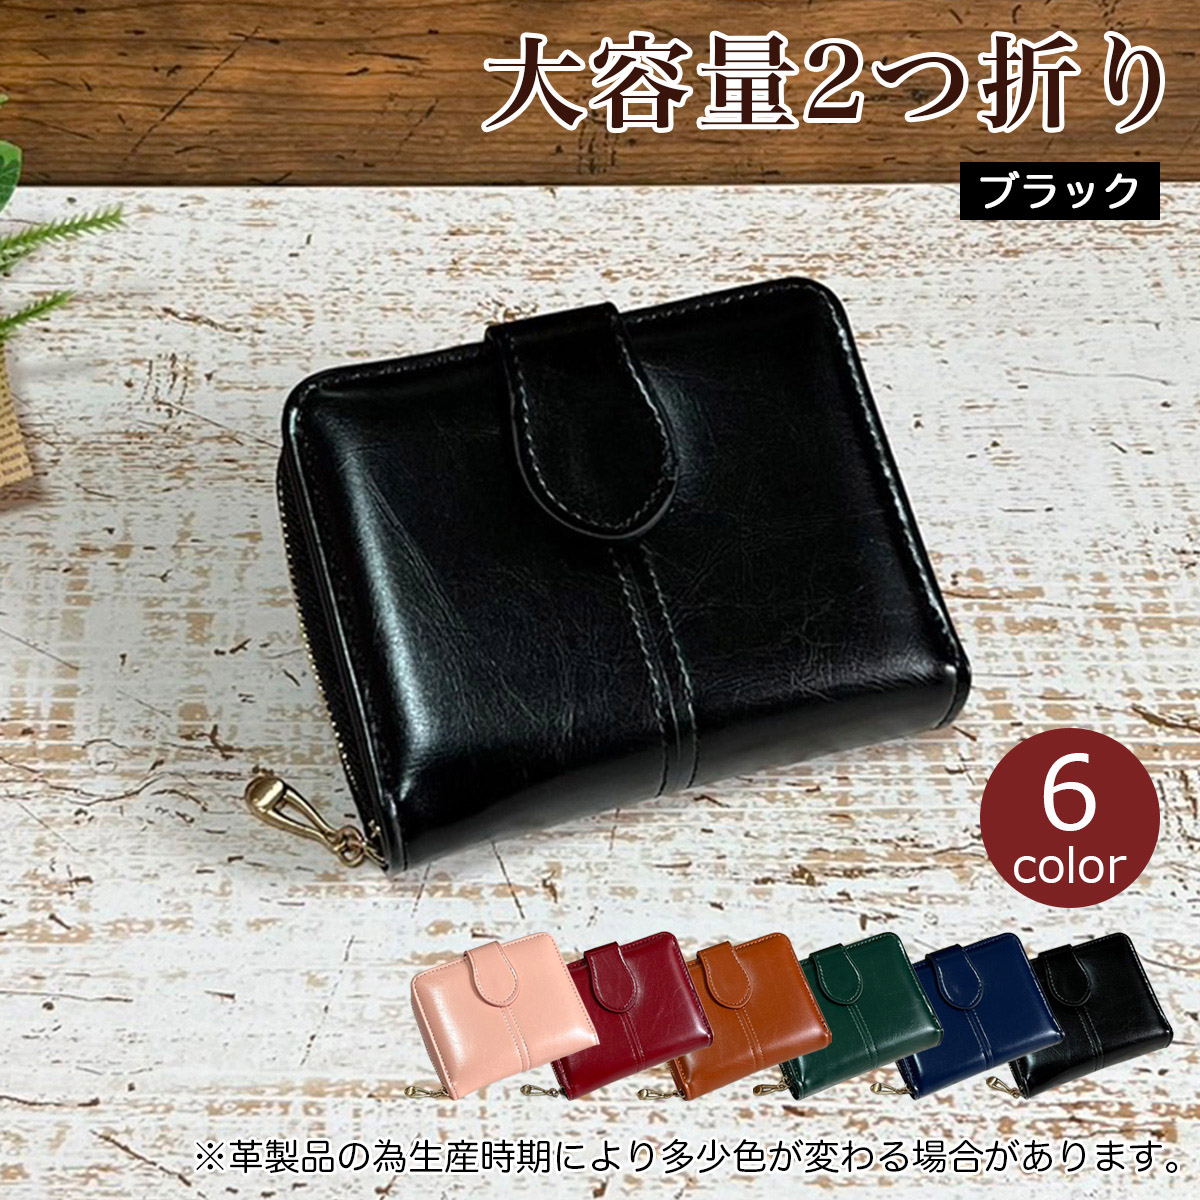 財布 レディース 2つ折り ミニ財布 メンズ 高級 コンパクト 小さい財布 カードケース